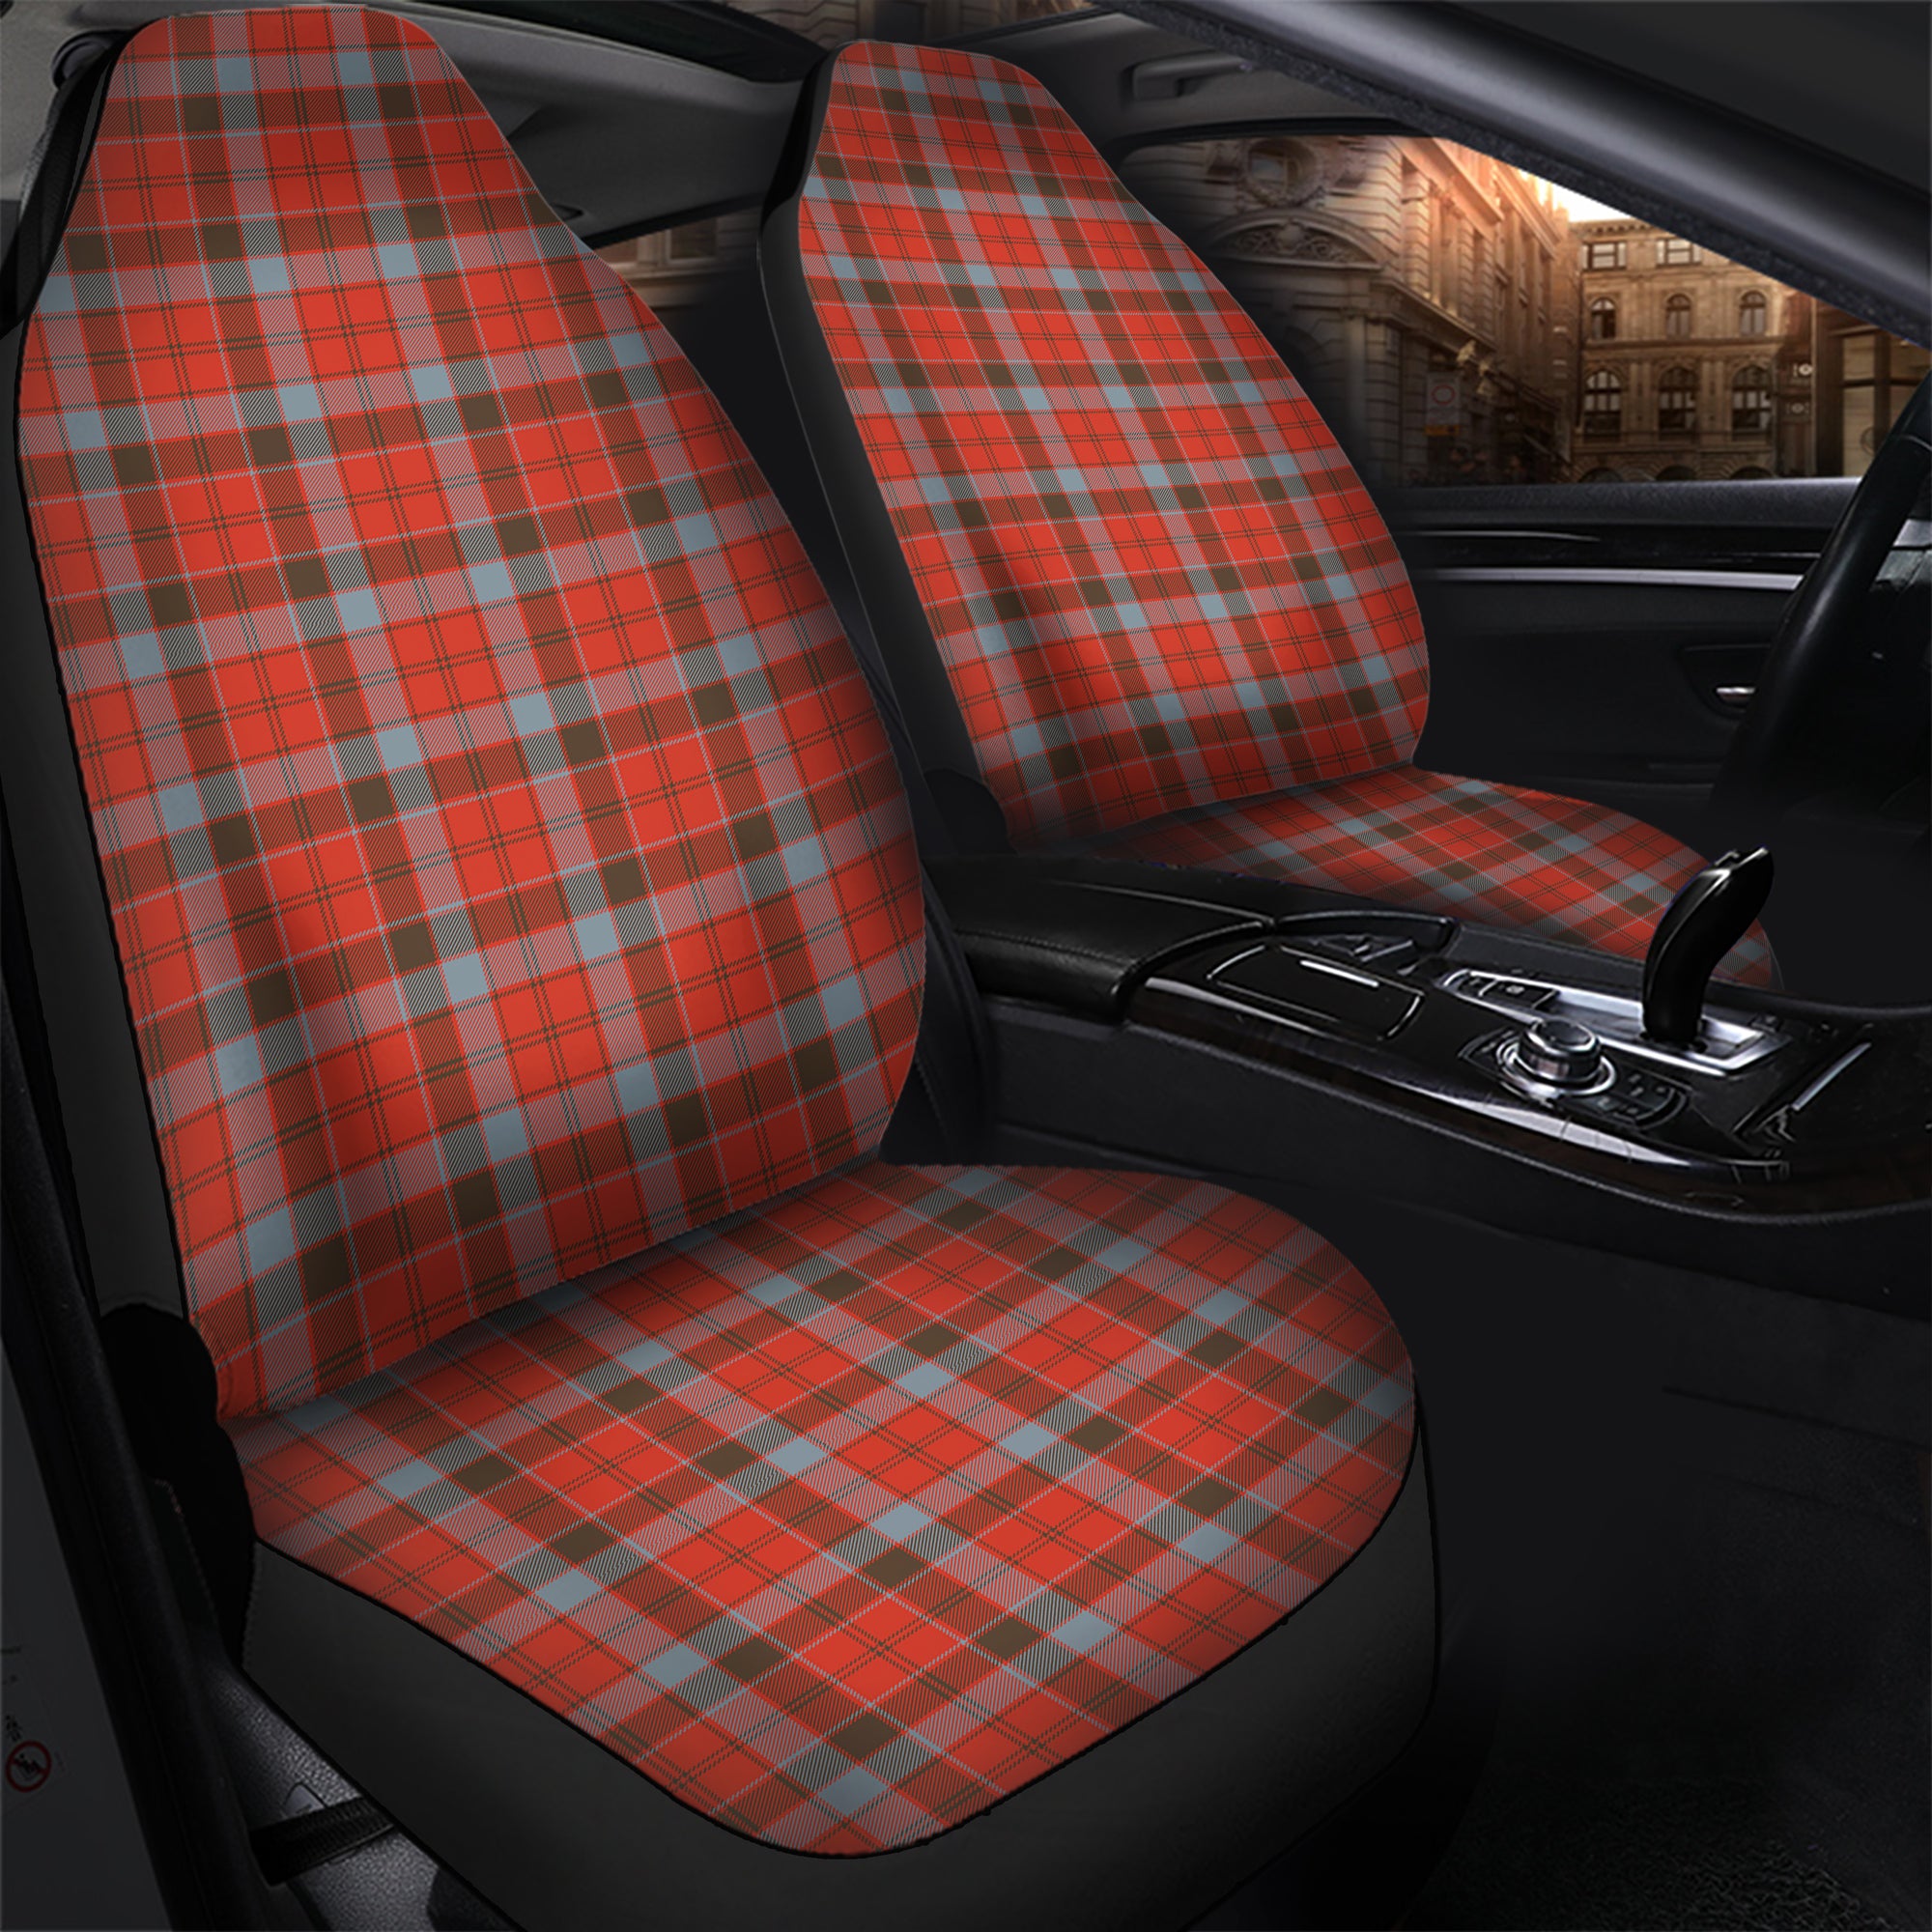 scottish-robertson-weathered-clan-tartan-car-seat-cover